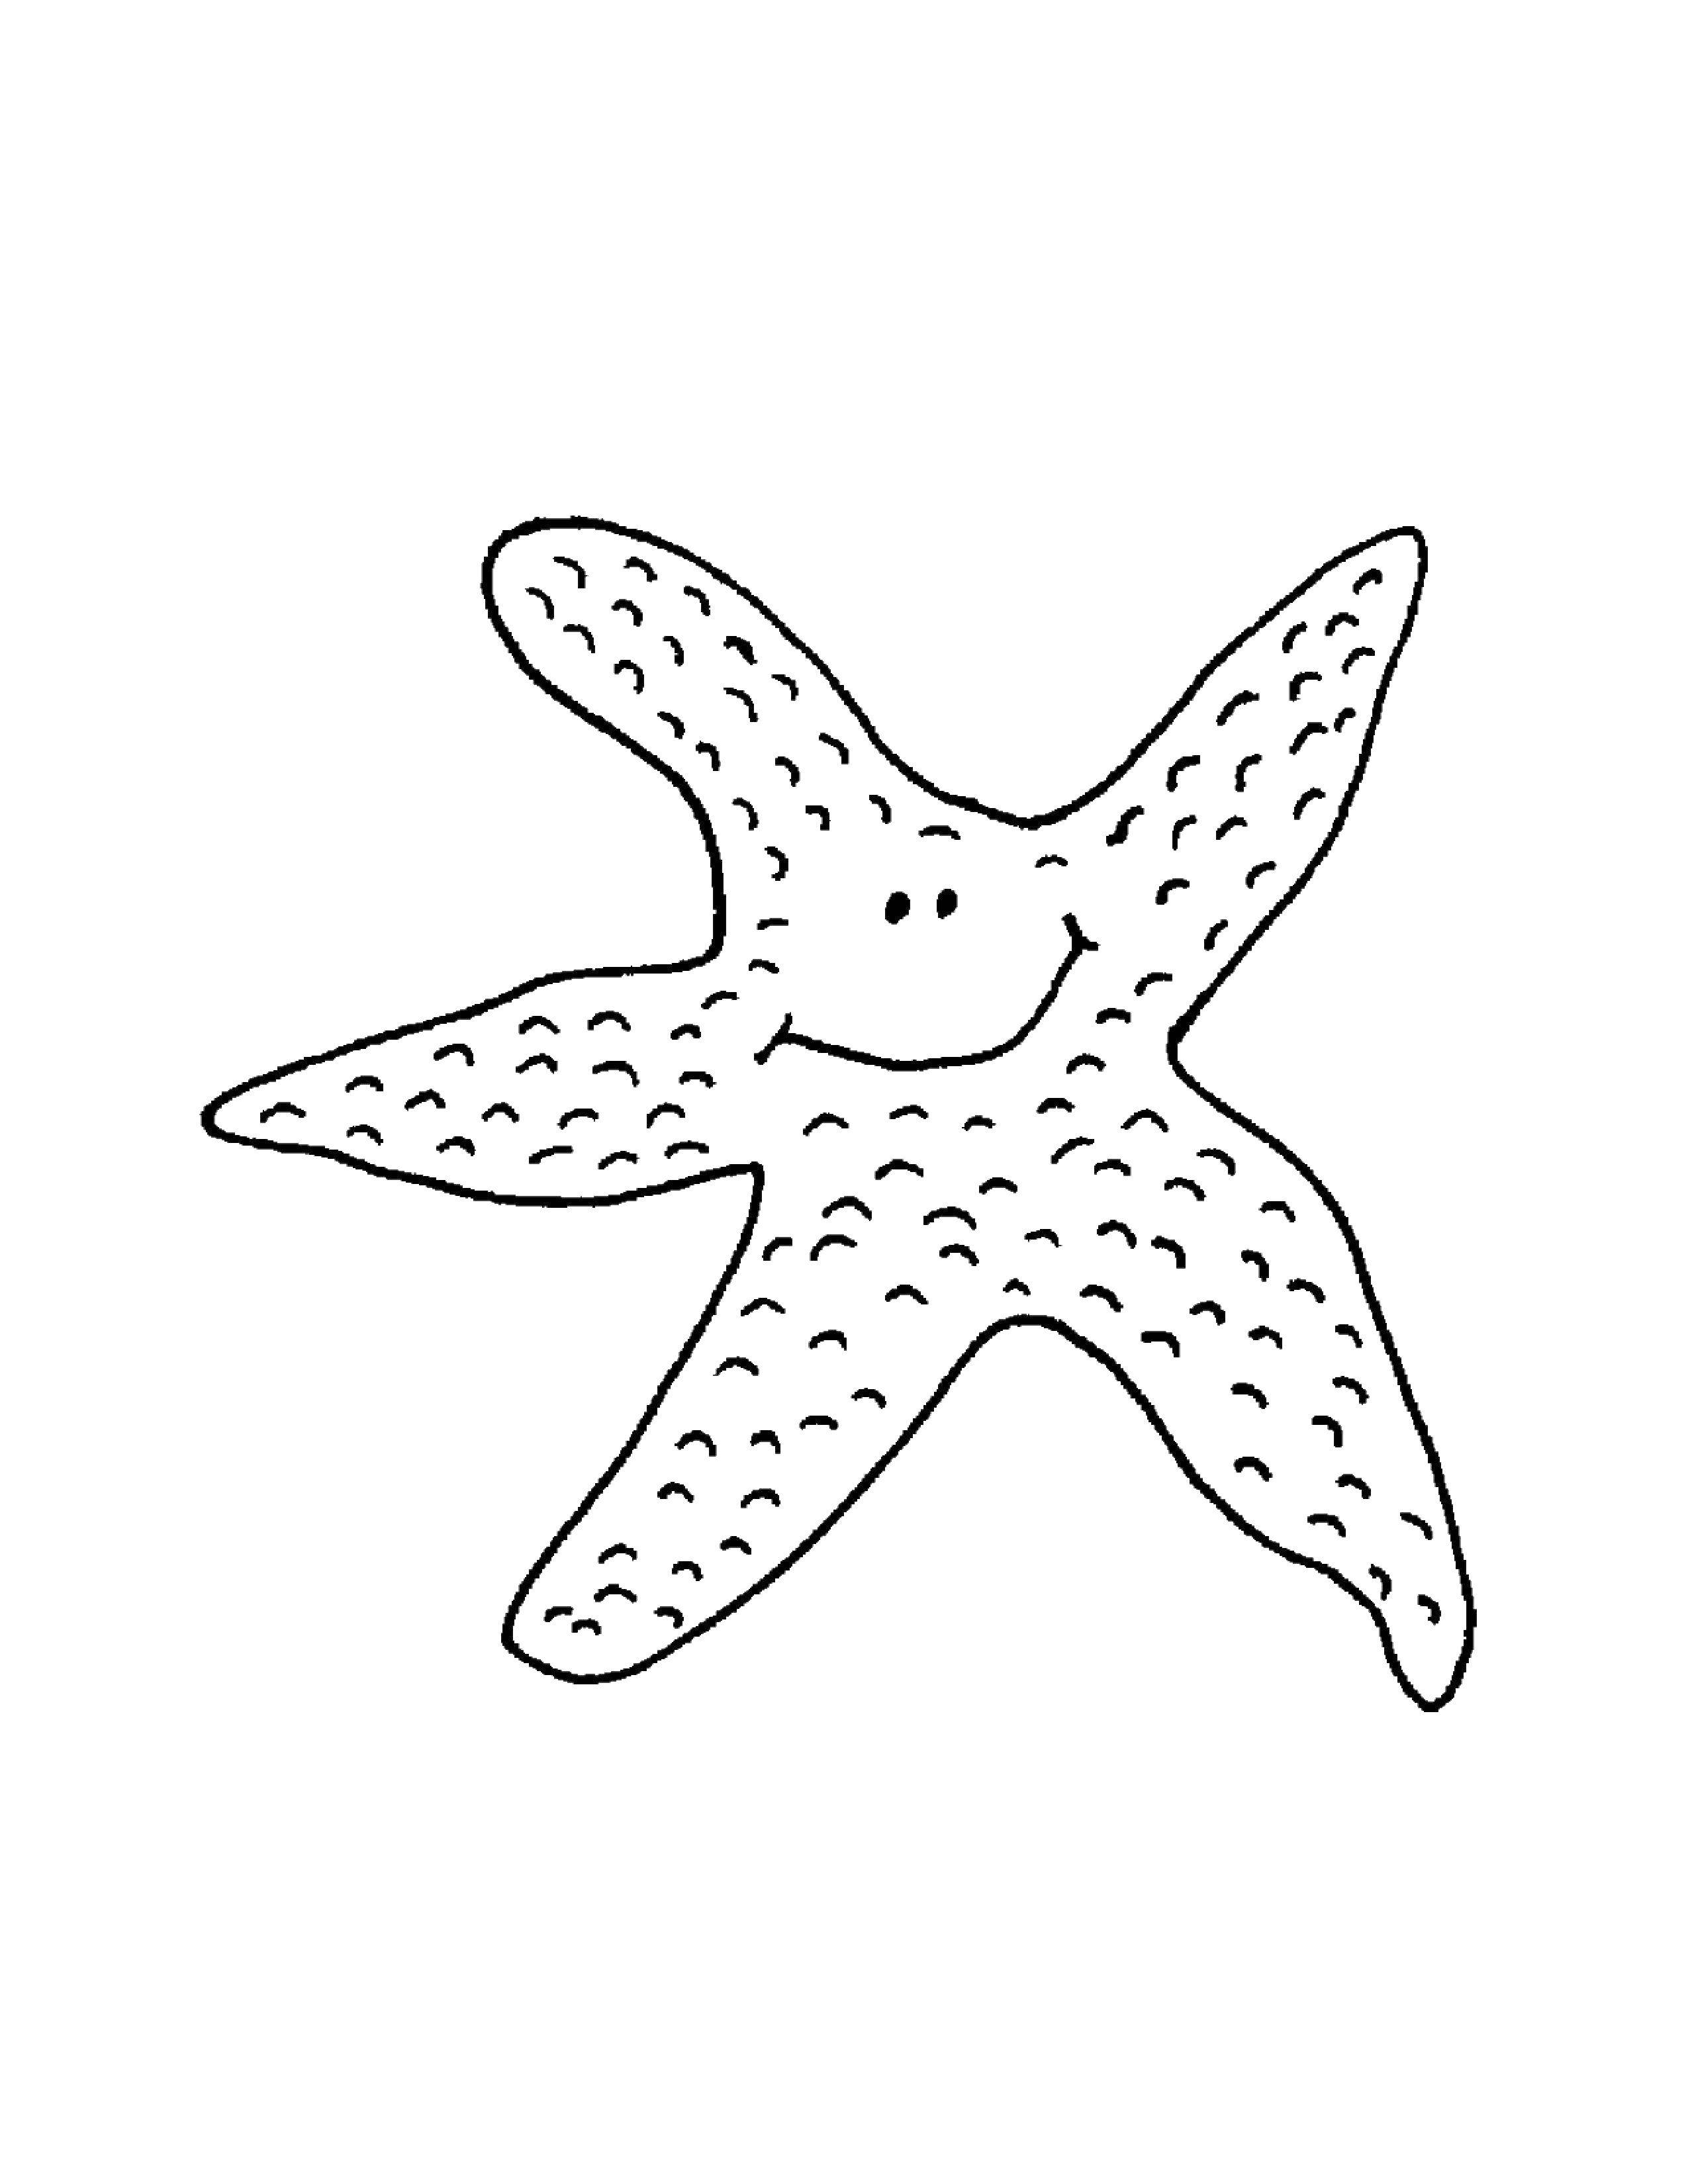 Coloring Starfish. Category marine. Tags:  Underwater world, starfish.